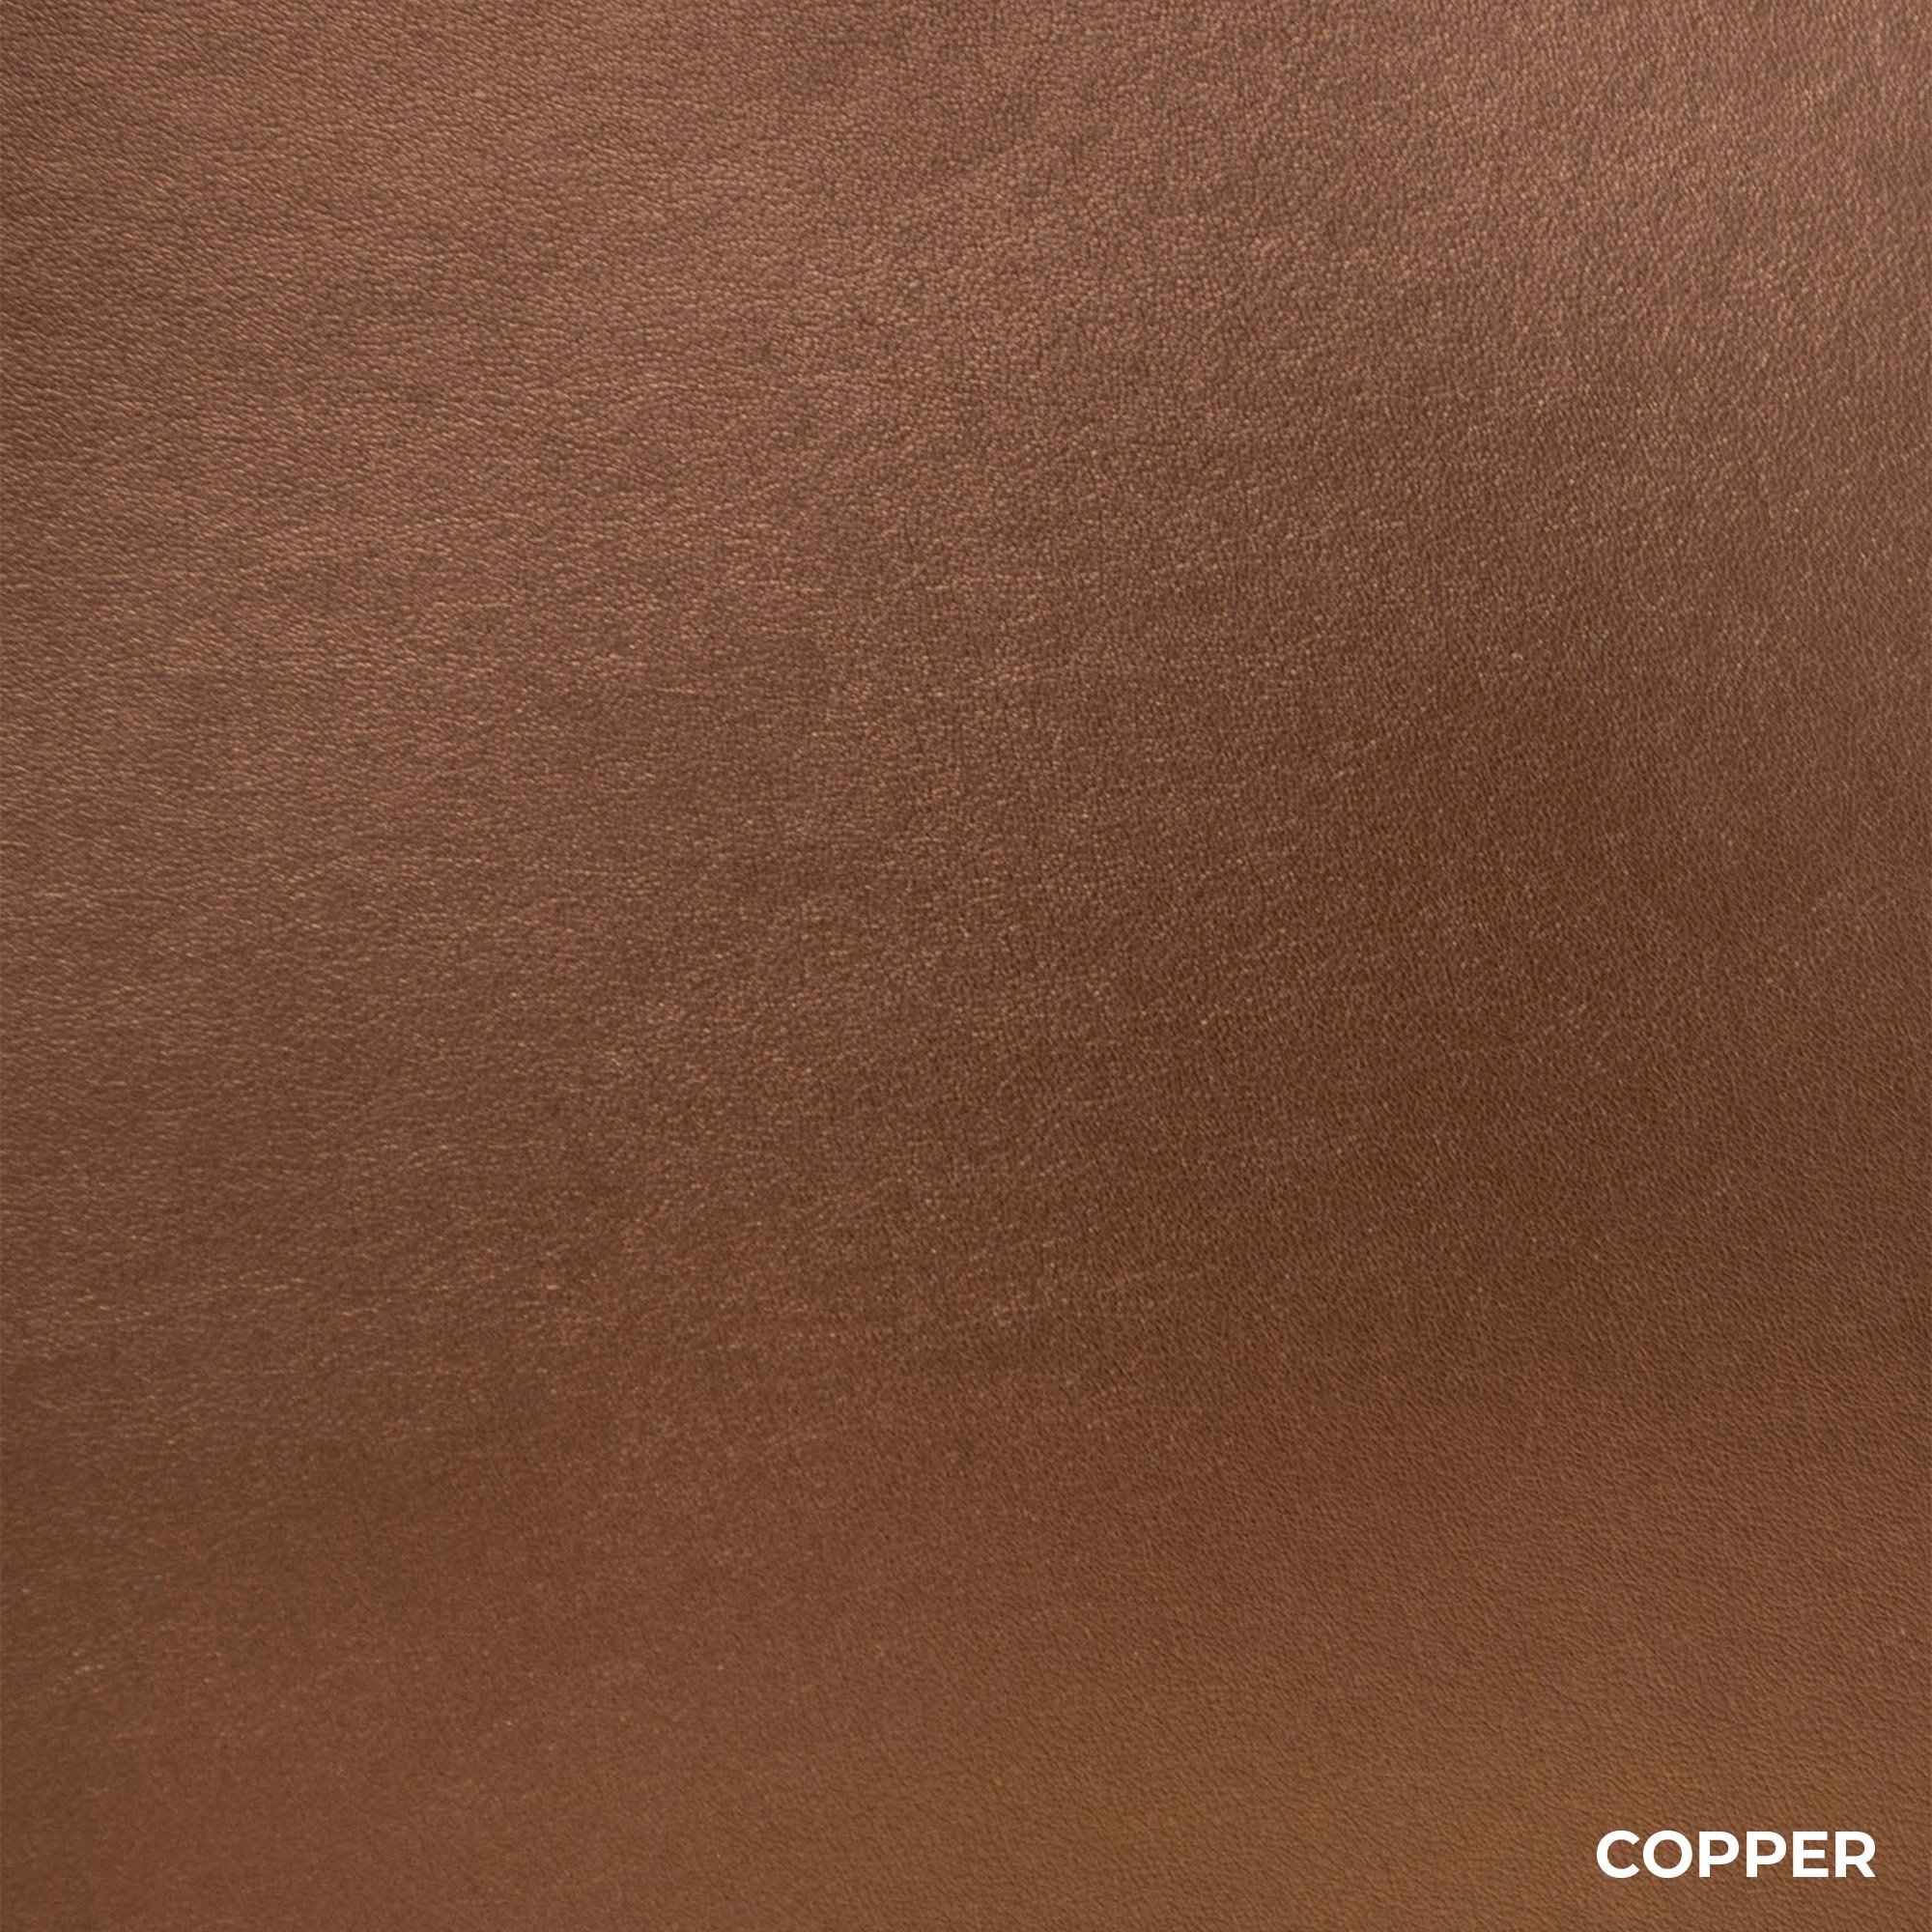 Copper Iridescent